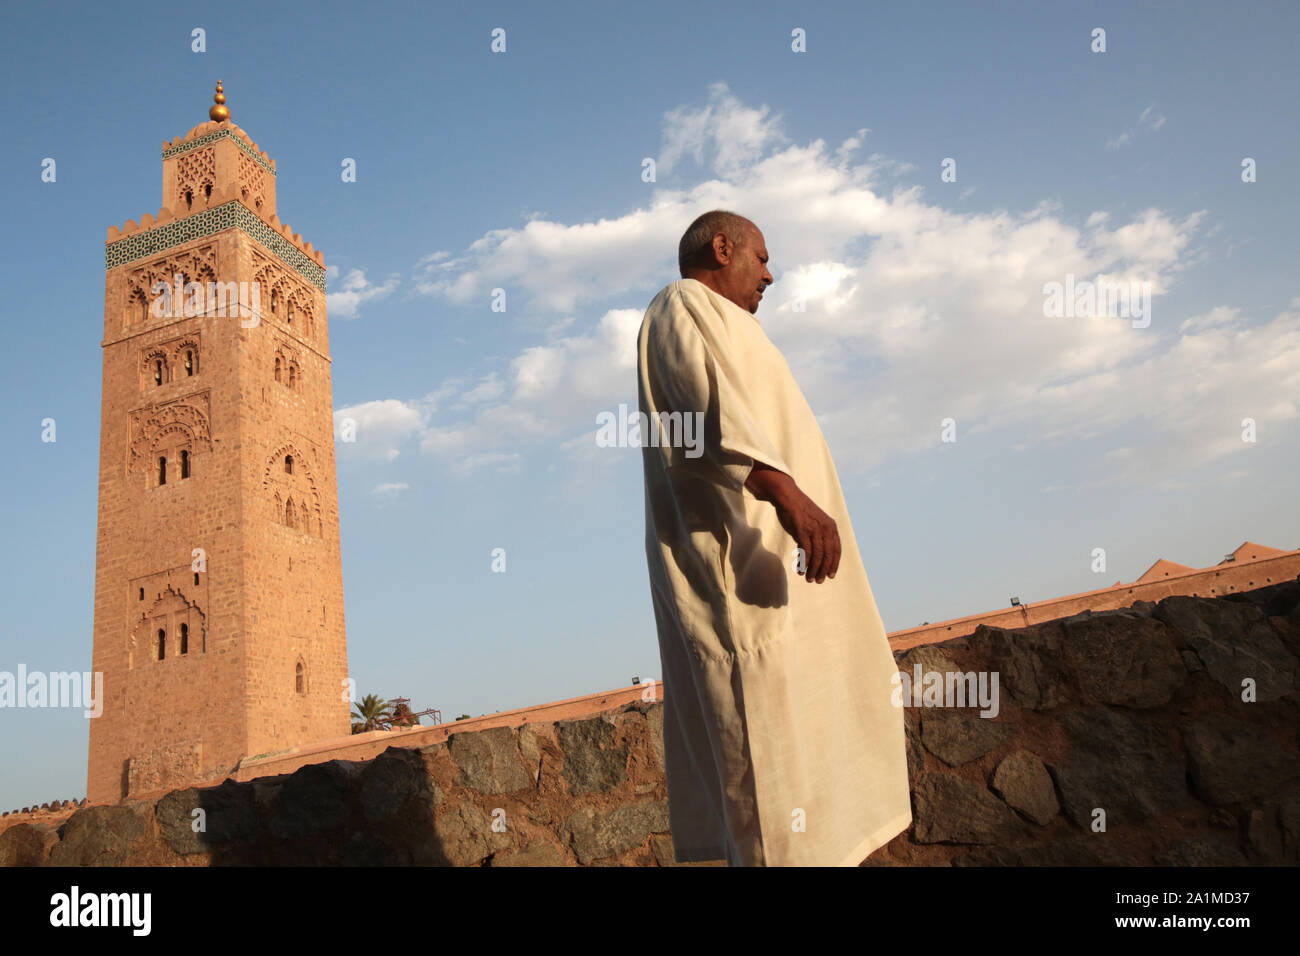 Mosquée Koutoubia ou mosquée des libraires. Marrakech. Maroc. Stock Photo